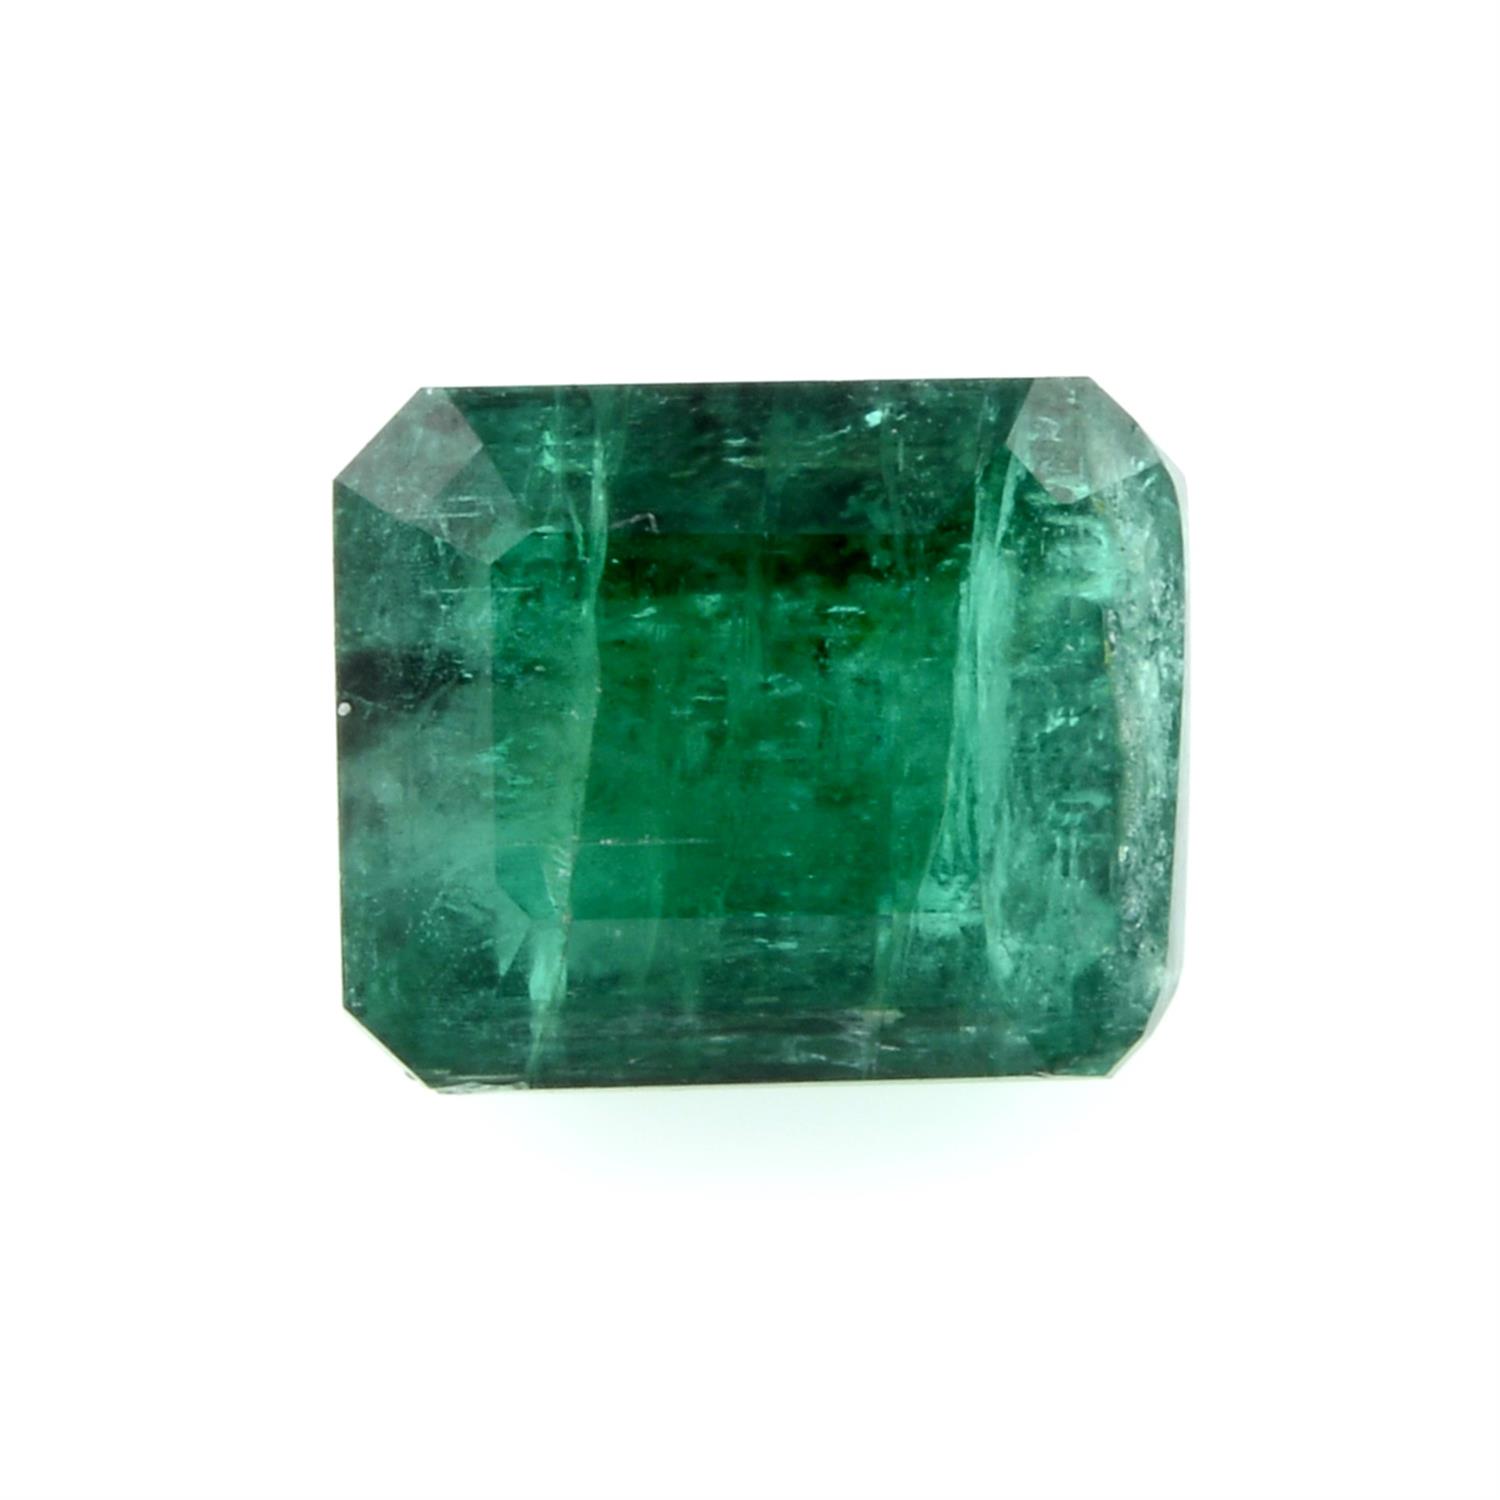 A rectangular shape emerald, weighing 1.13ct